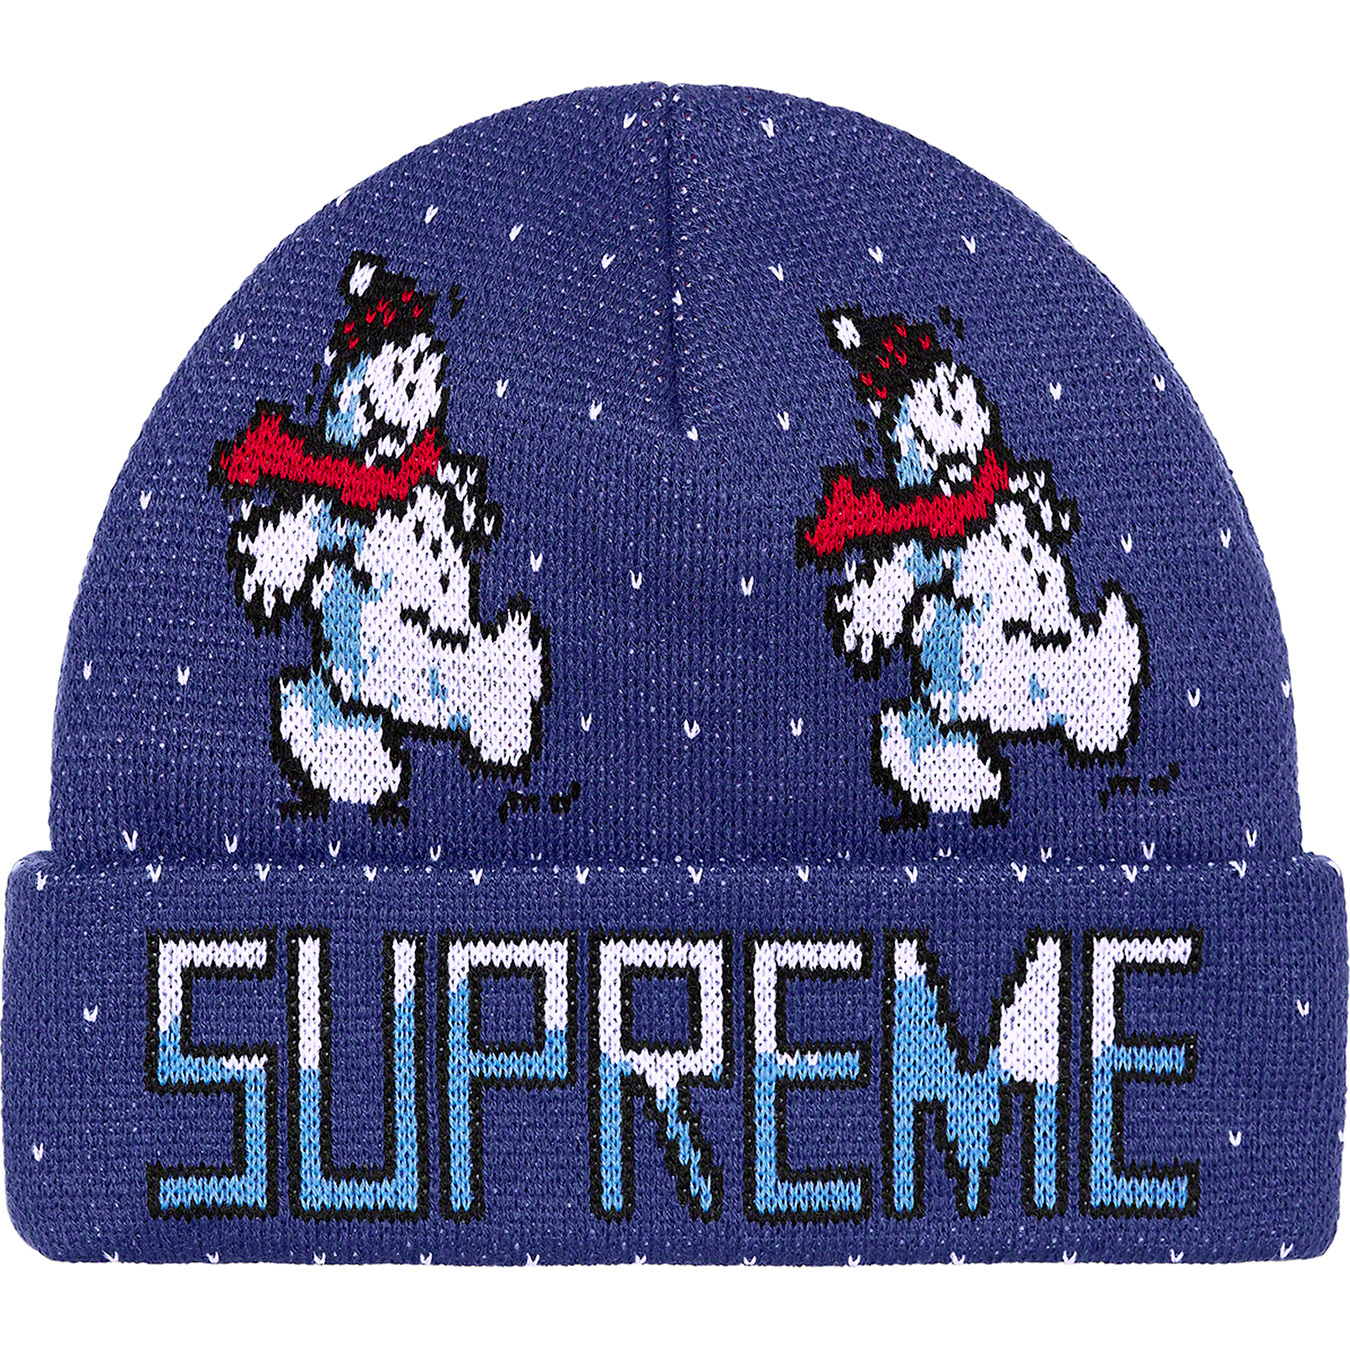 Snowman Beanie - fall winter 2021 - Supreme